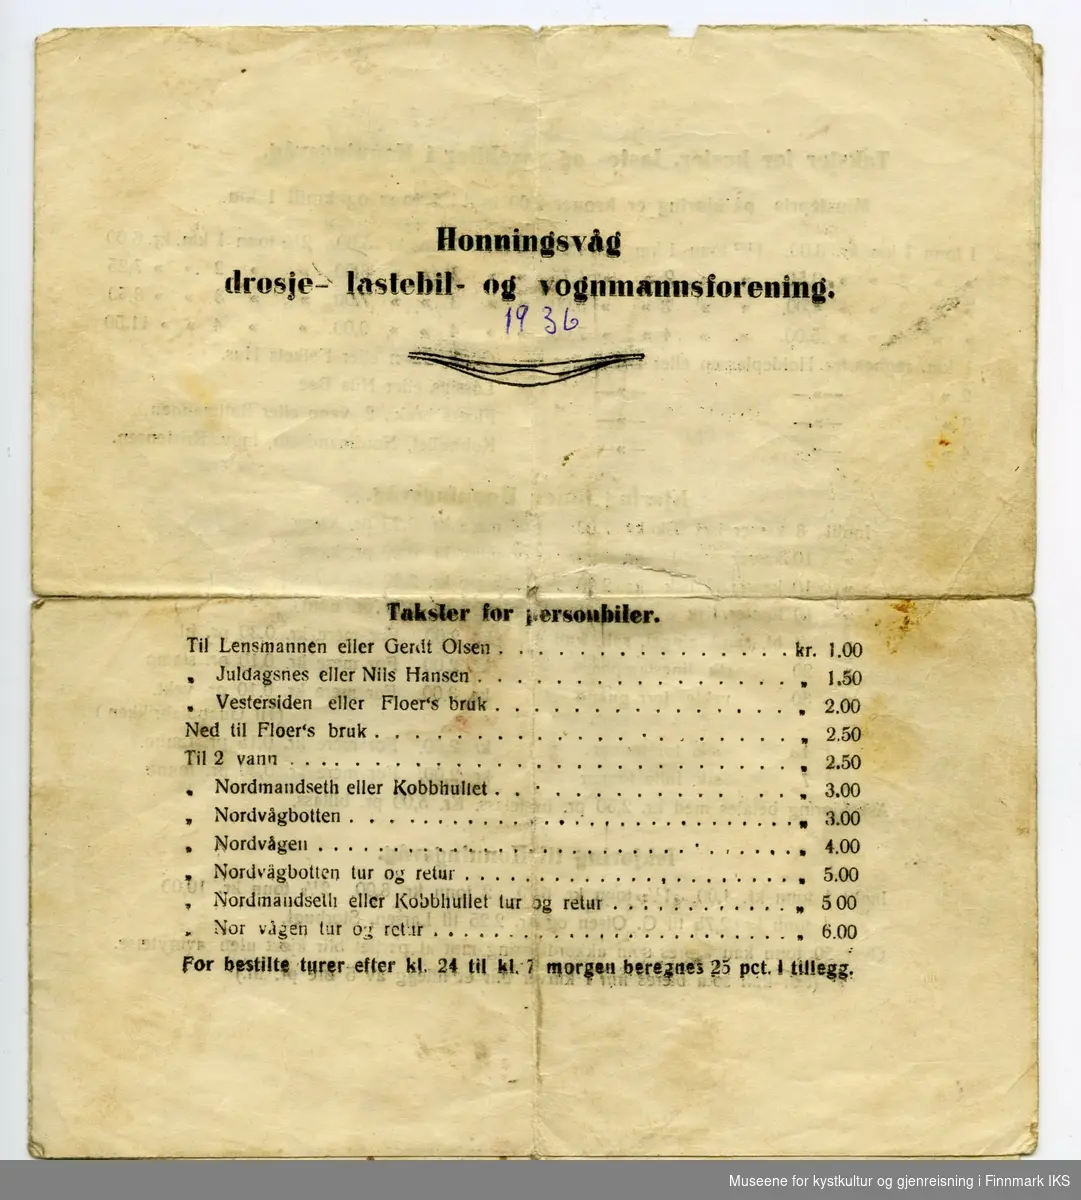 Honningsvåg drosje-, lastebil- og vognmannsforening 1936.
Takster for personbiler.